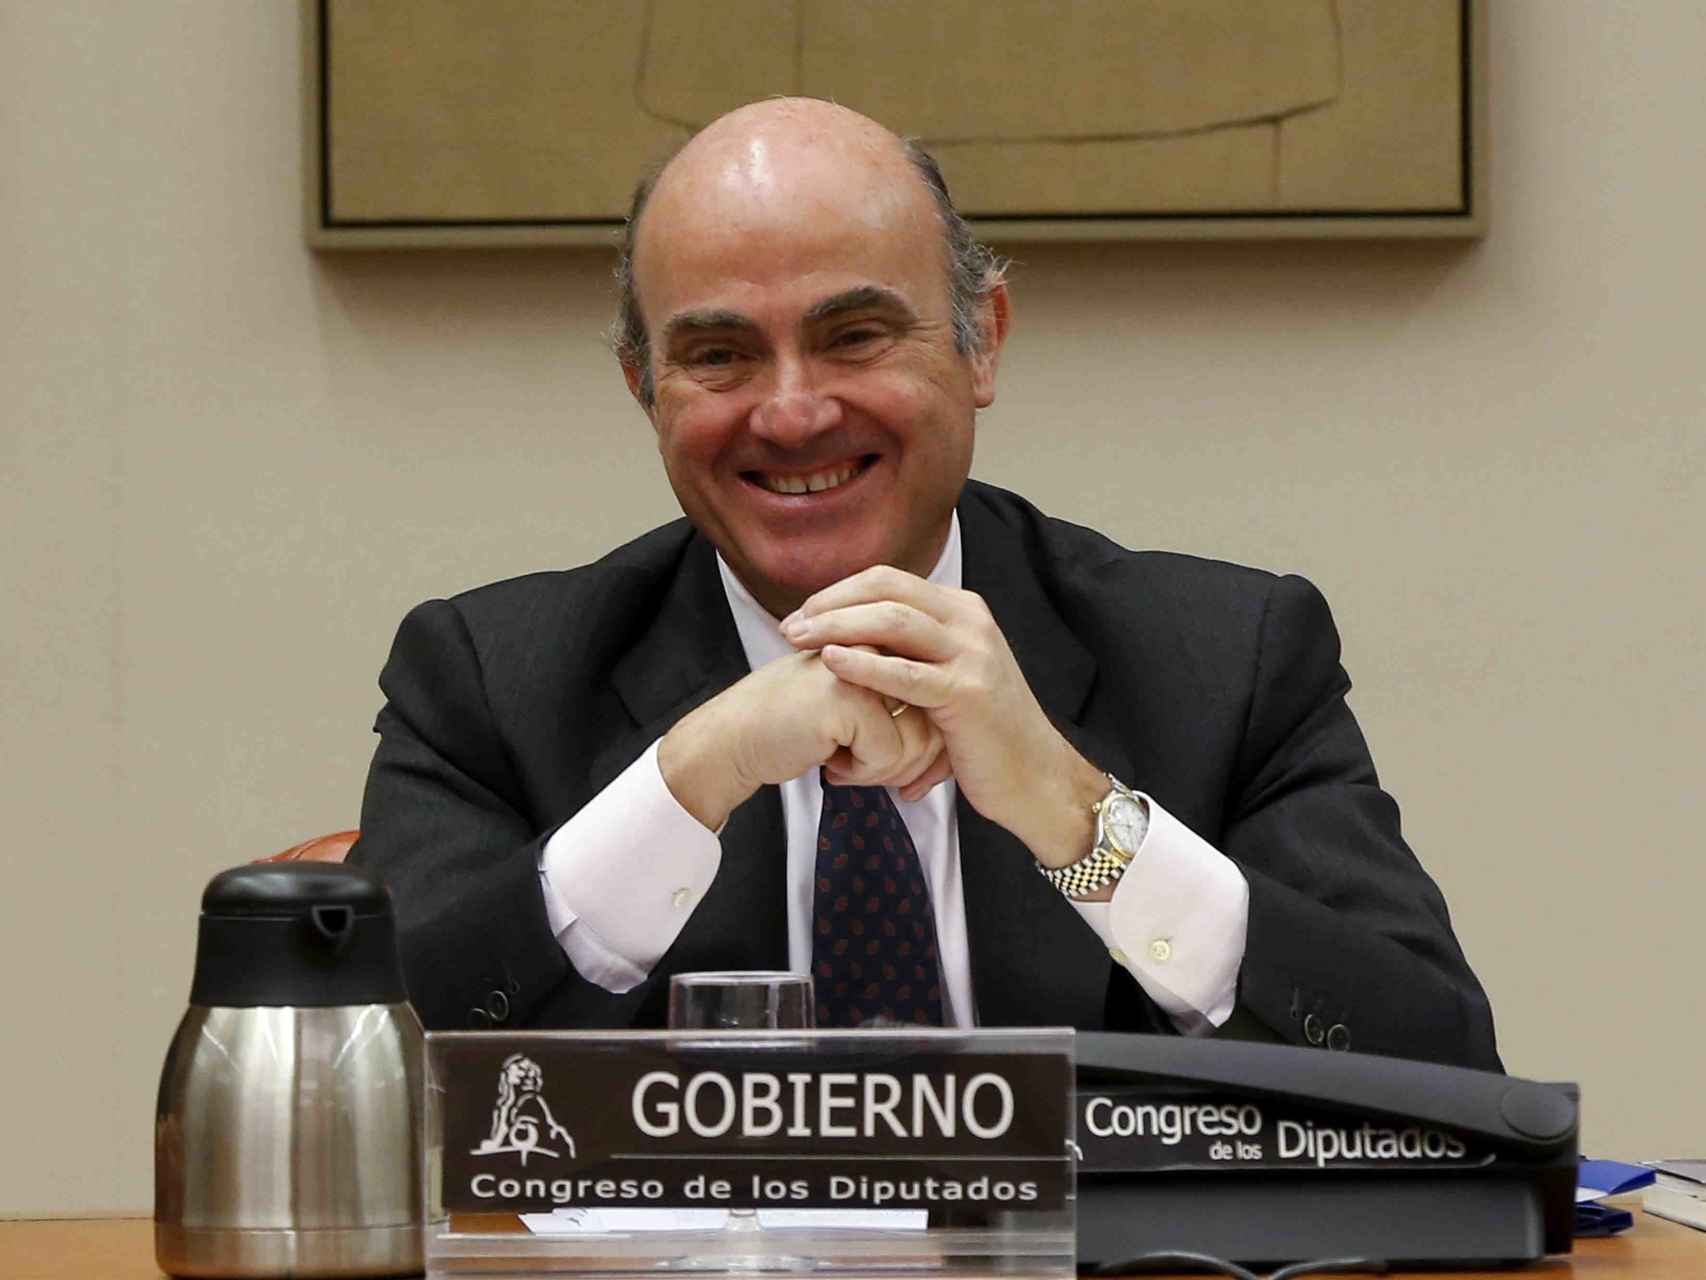 El ministro de Economía en funciones, Luis de Guindos